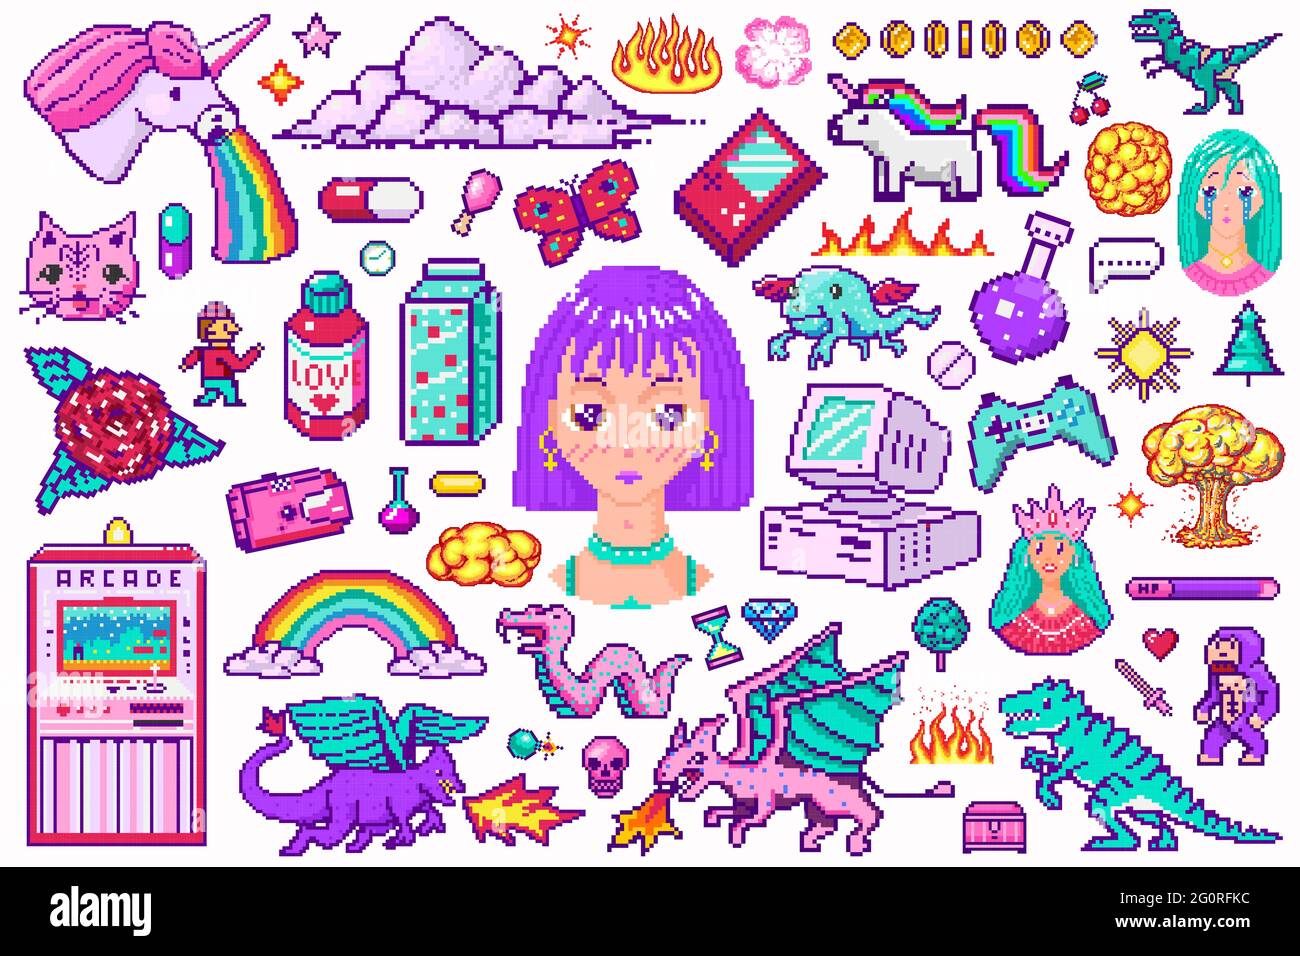 Pixel Art 8-Bit-Objekte. Digitale Spielelemente im Retro-Stil. Set von rosa Mode-Ikonen. Vintage Aufkleber für Mädchen. Arcades Computervideo und Figuren. Pony Stock Vektor